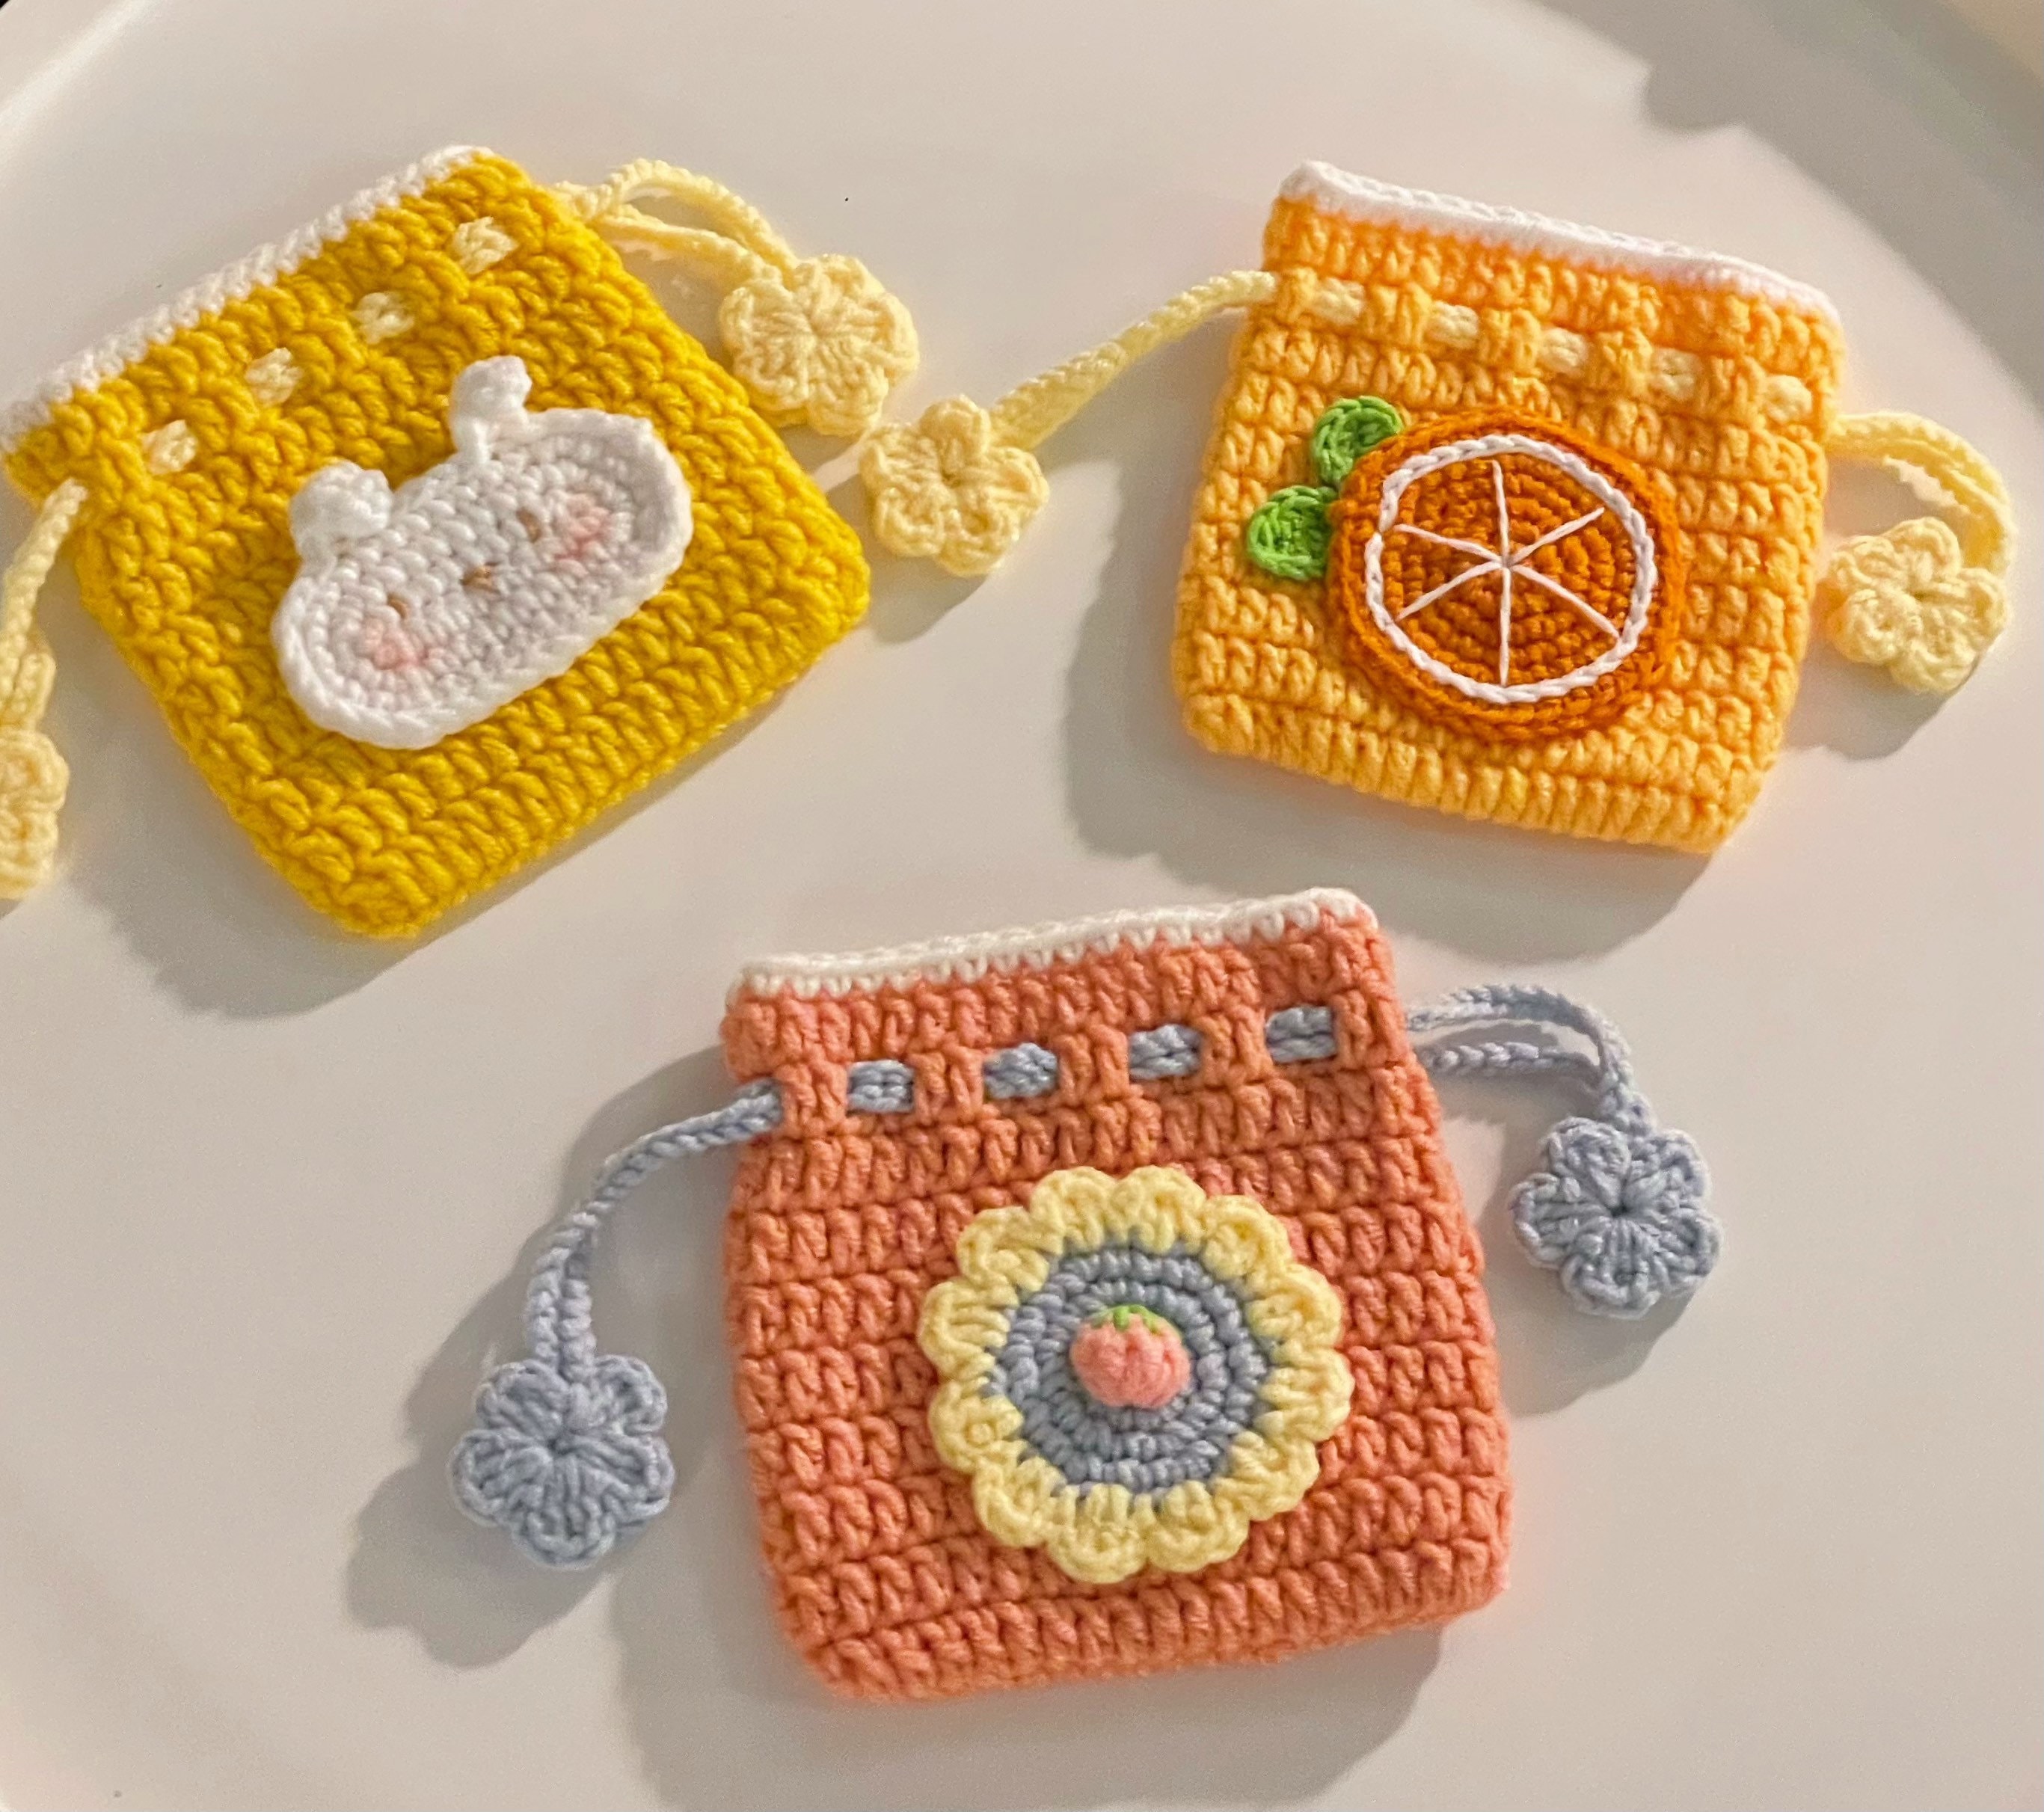 15 Crochet Coin Purse Patterns - Crochet News